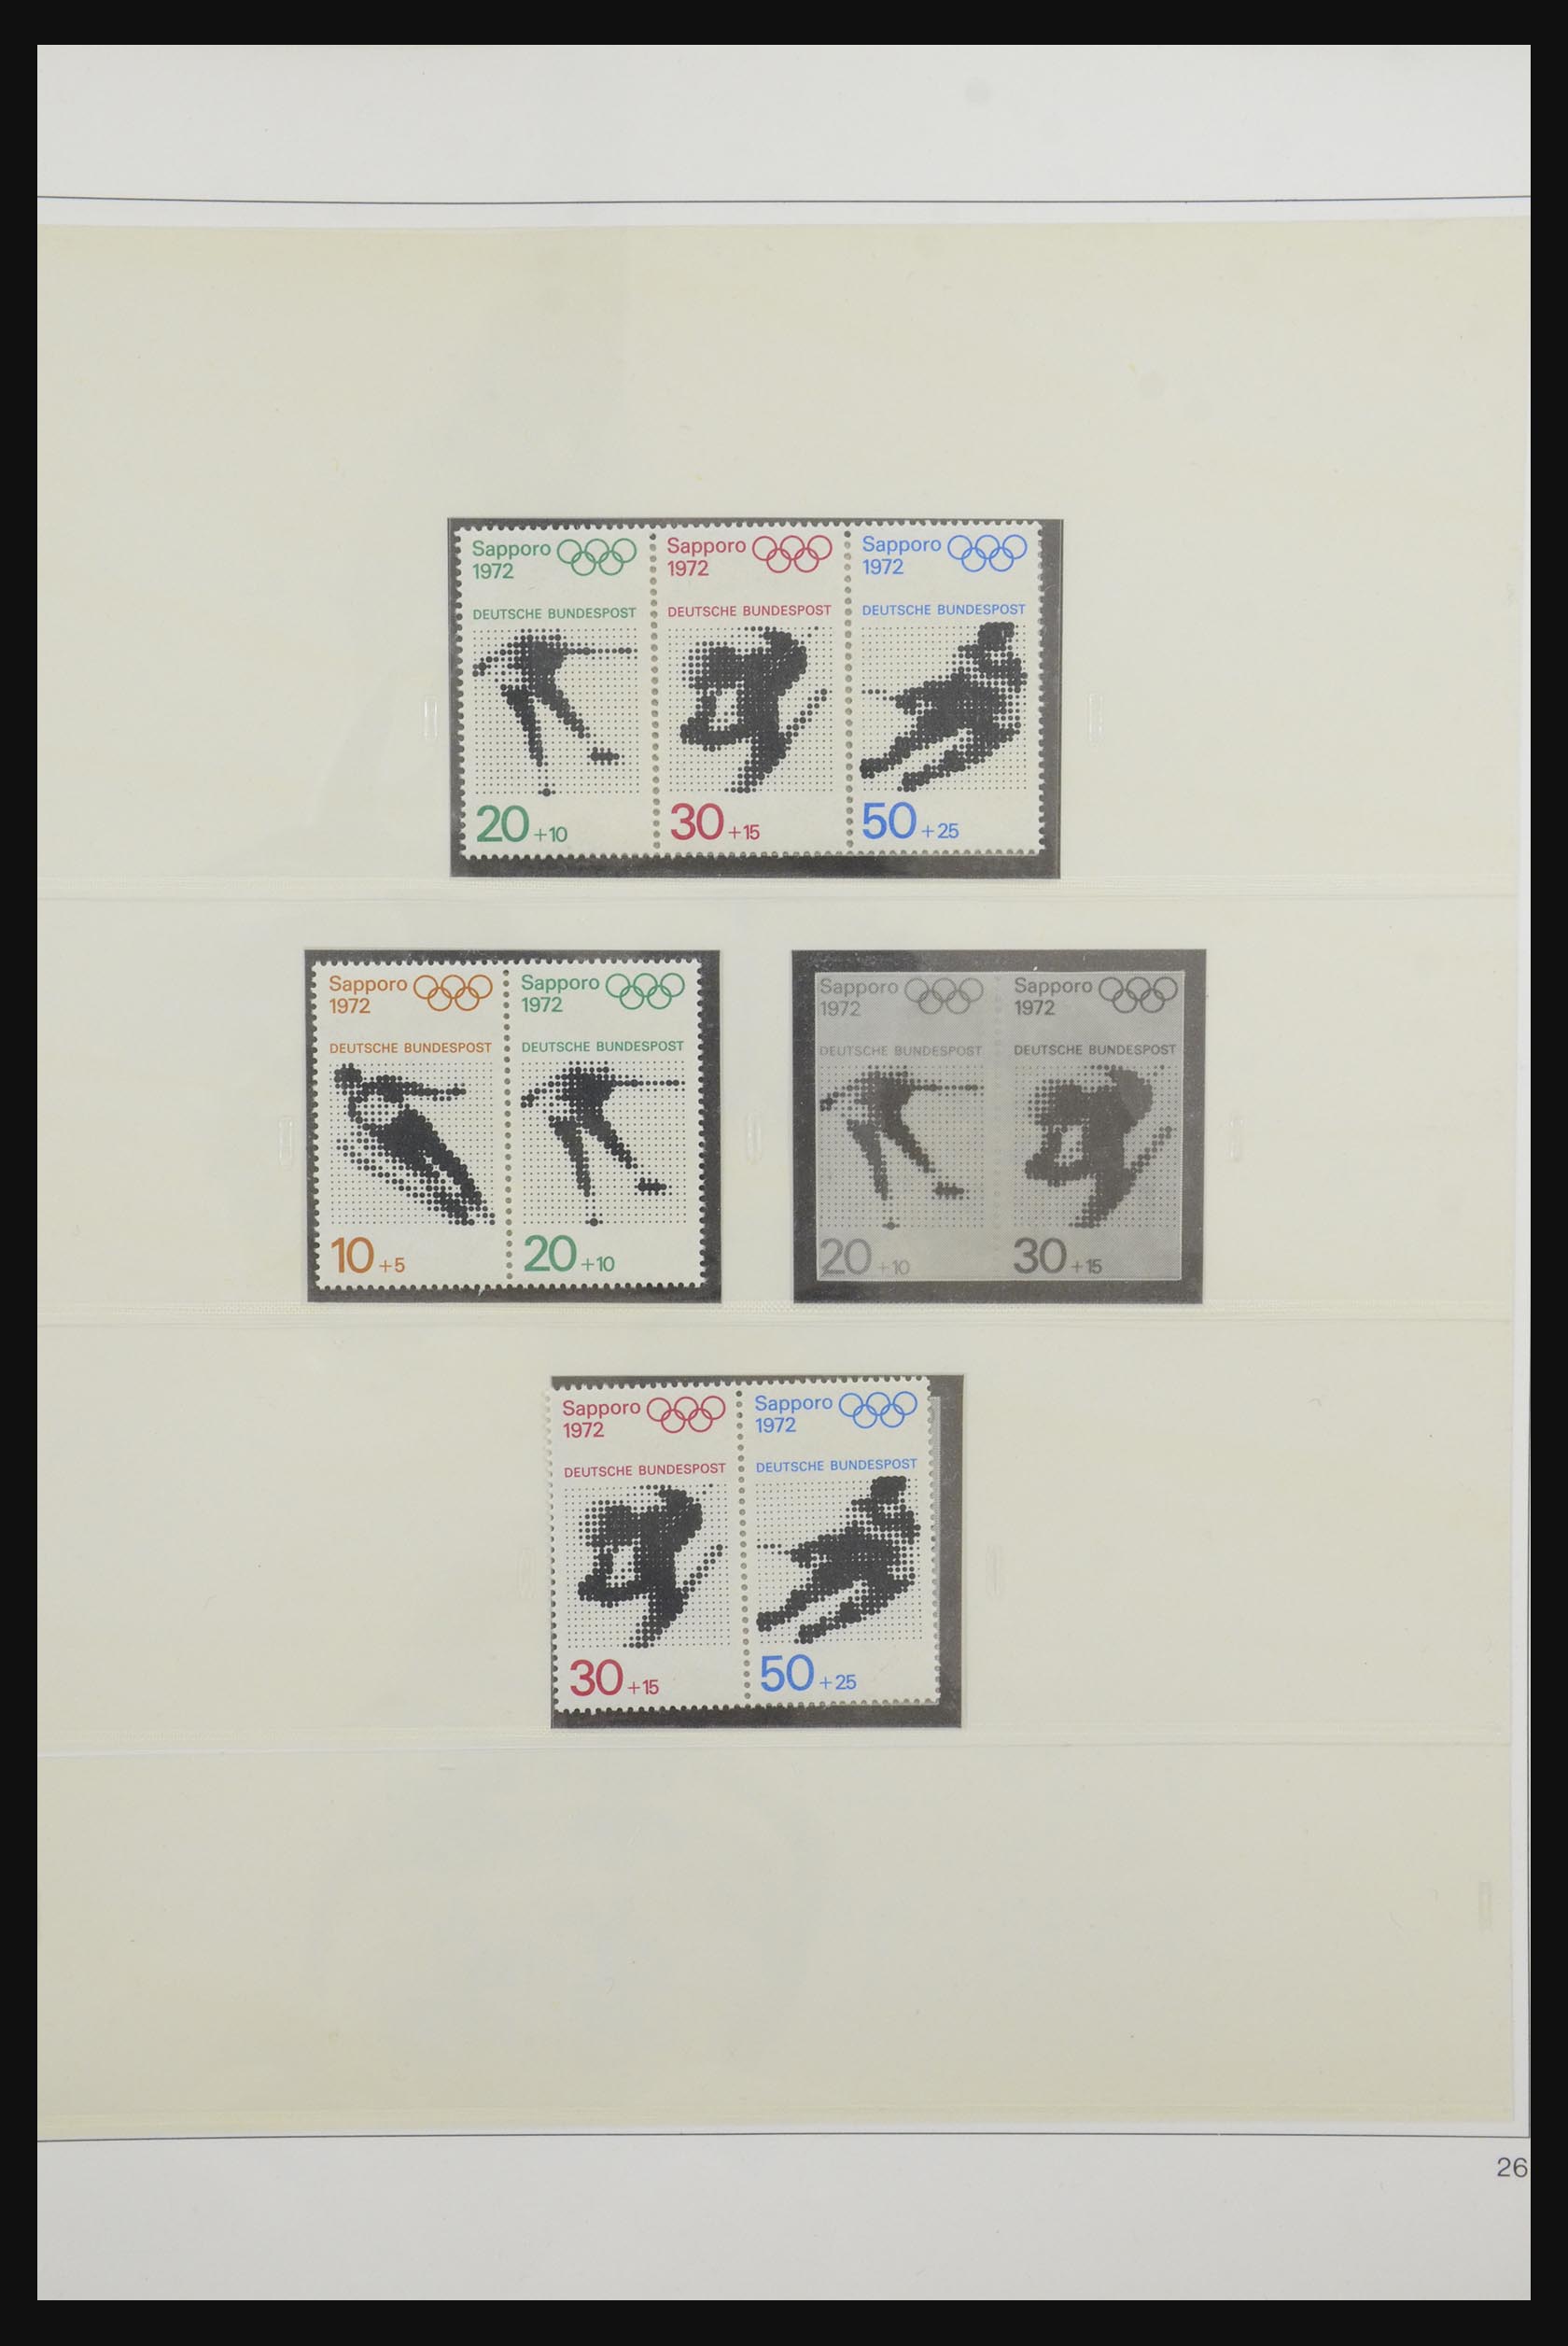 31842 036 - 31842 Bundespost combinaties 1951-2003.